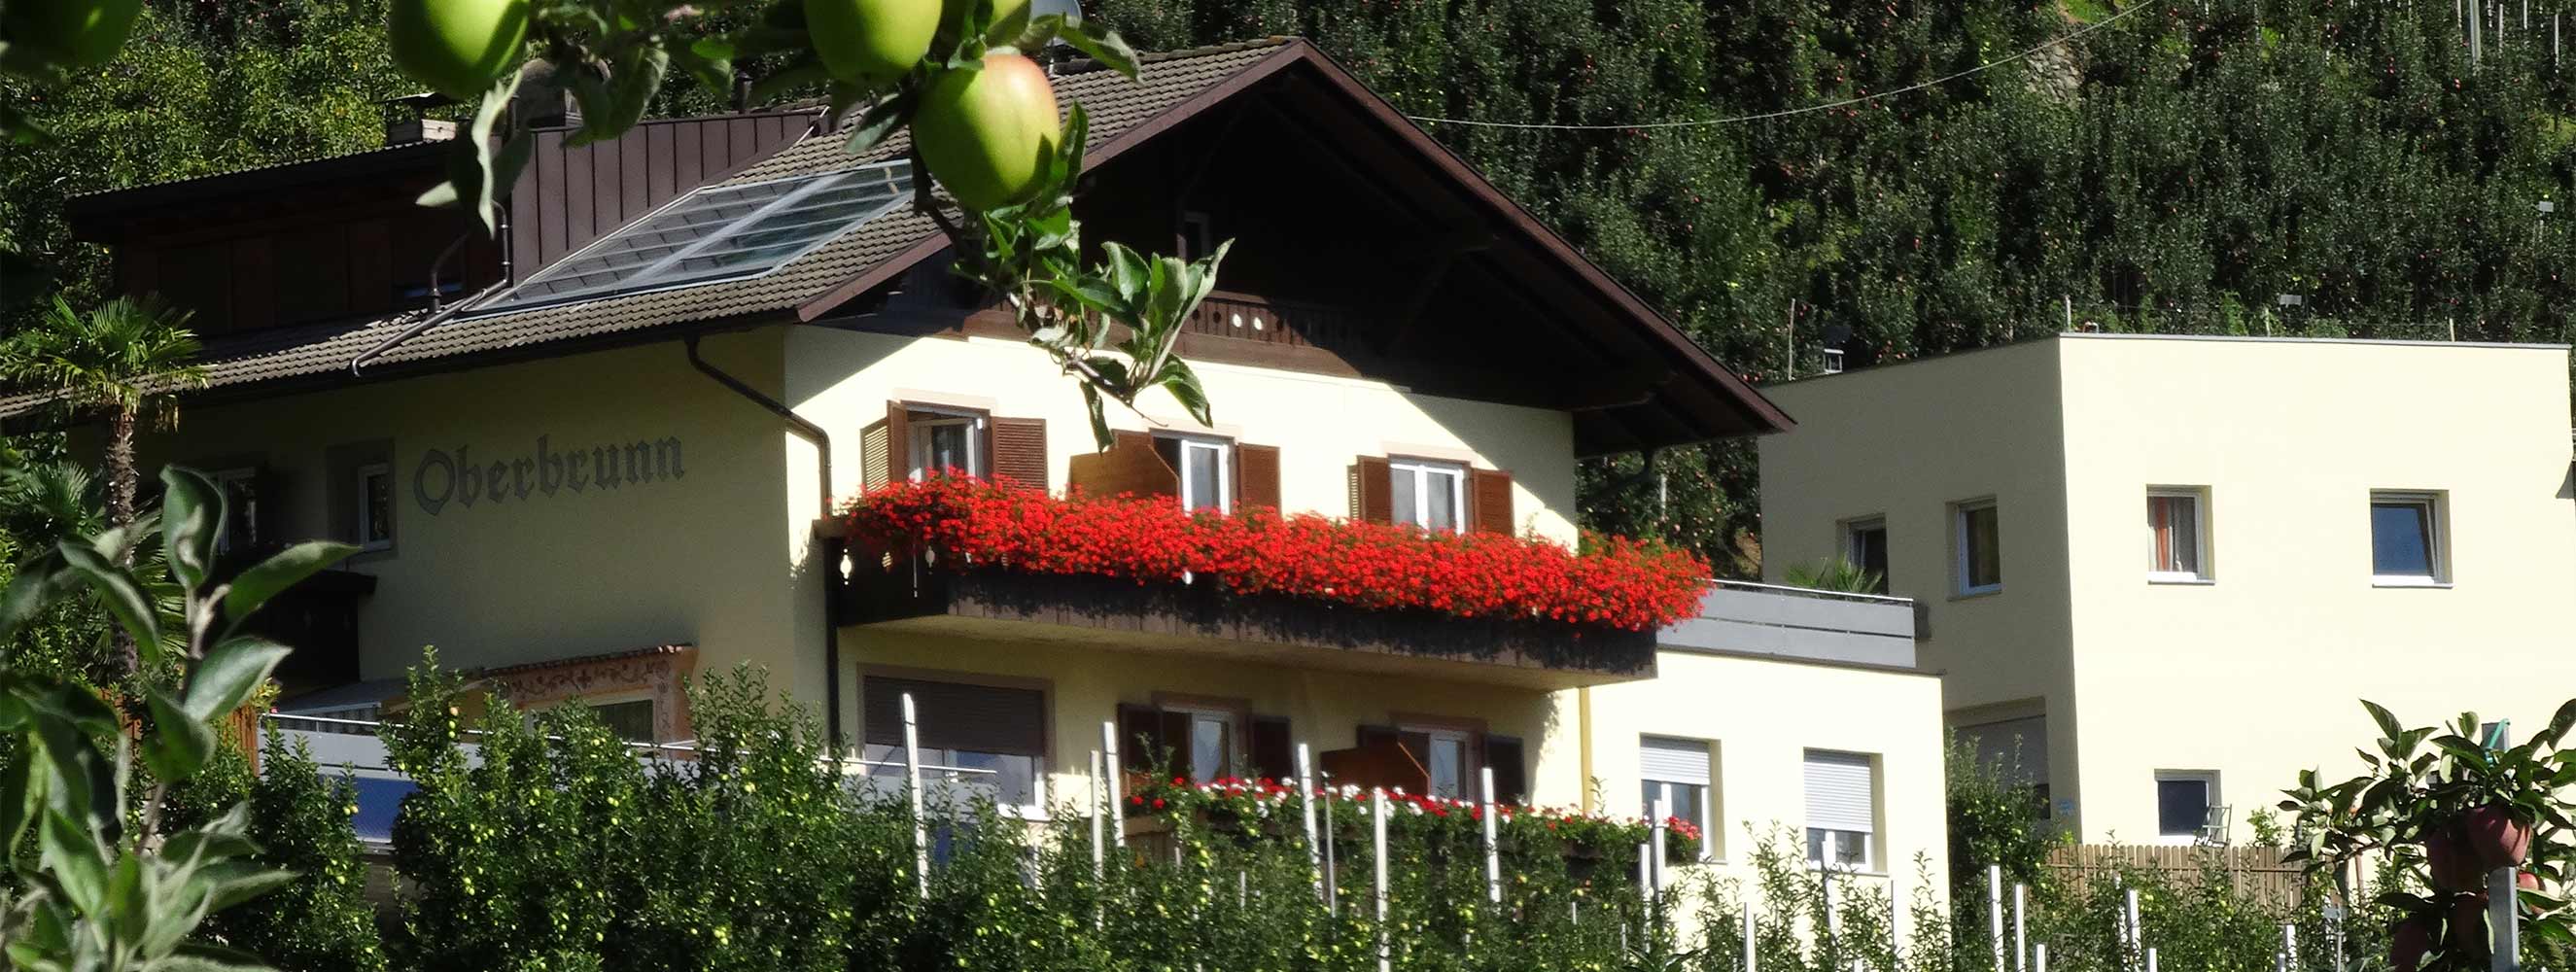 Ferienwohnung Gartenrose - Oberbrunnhof